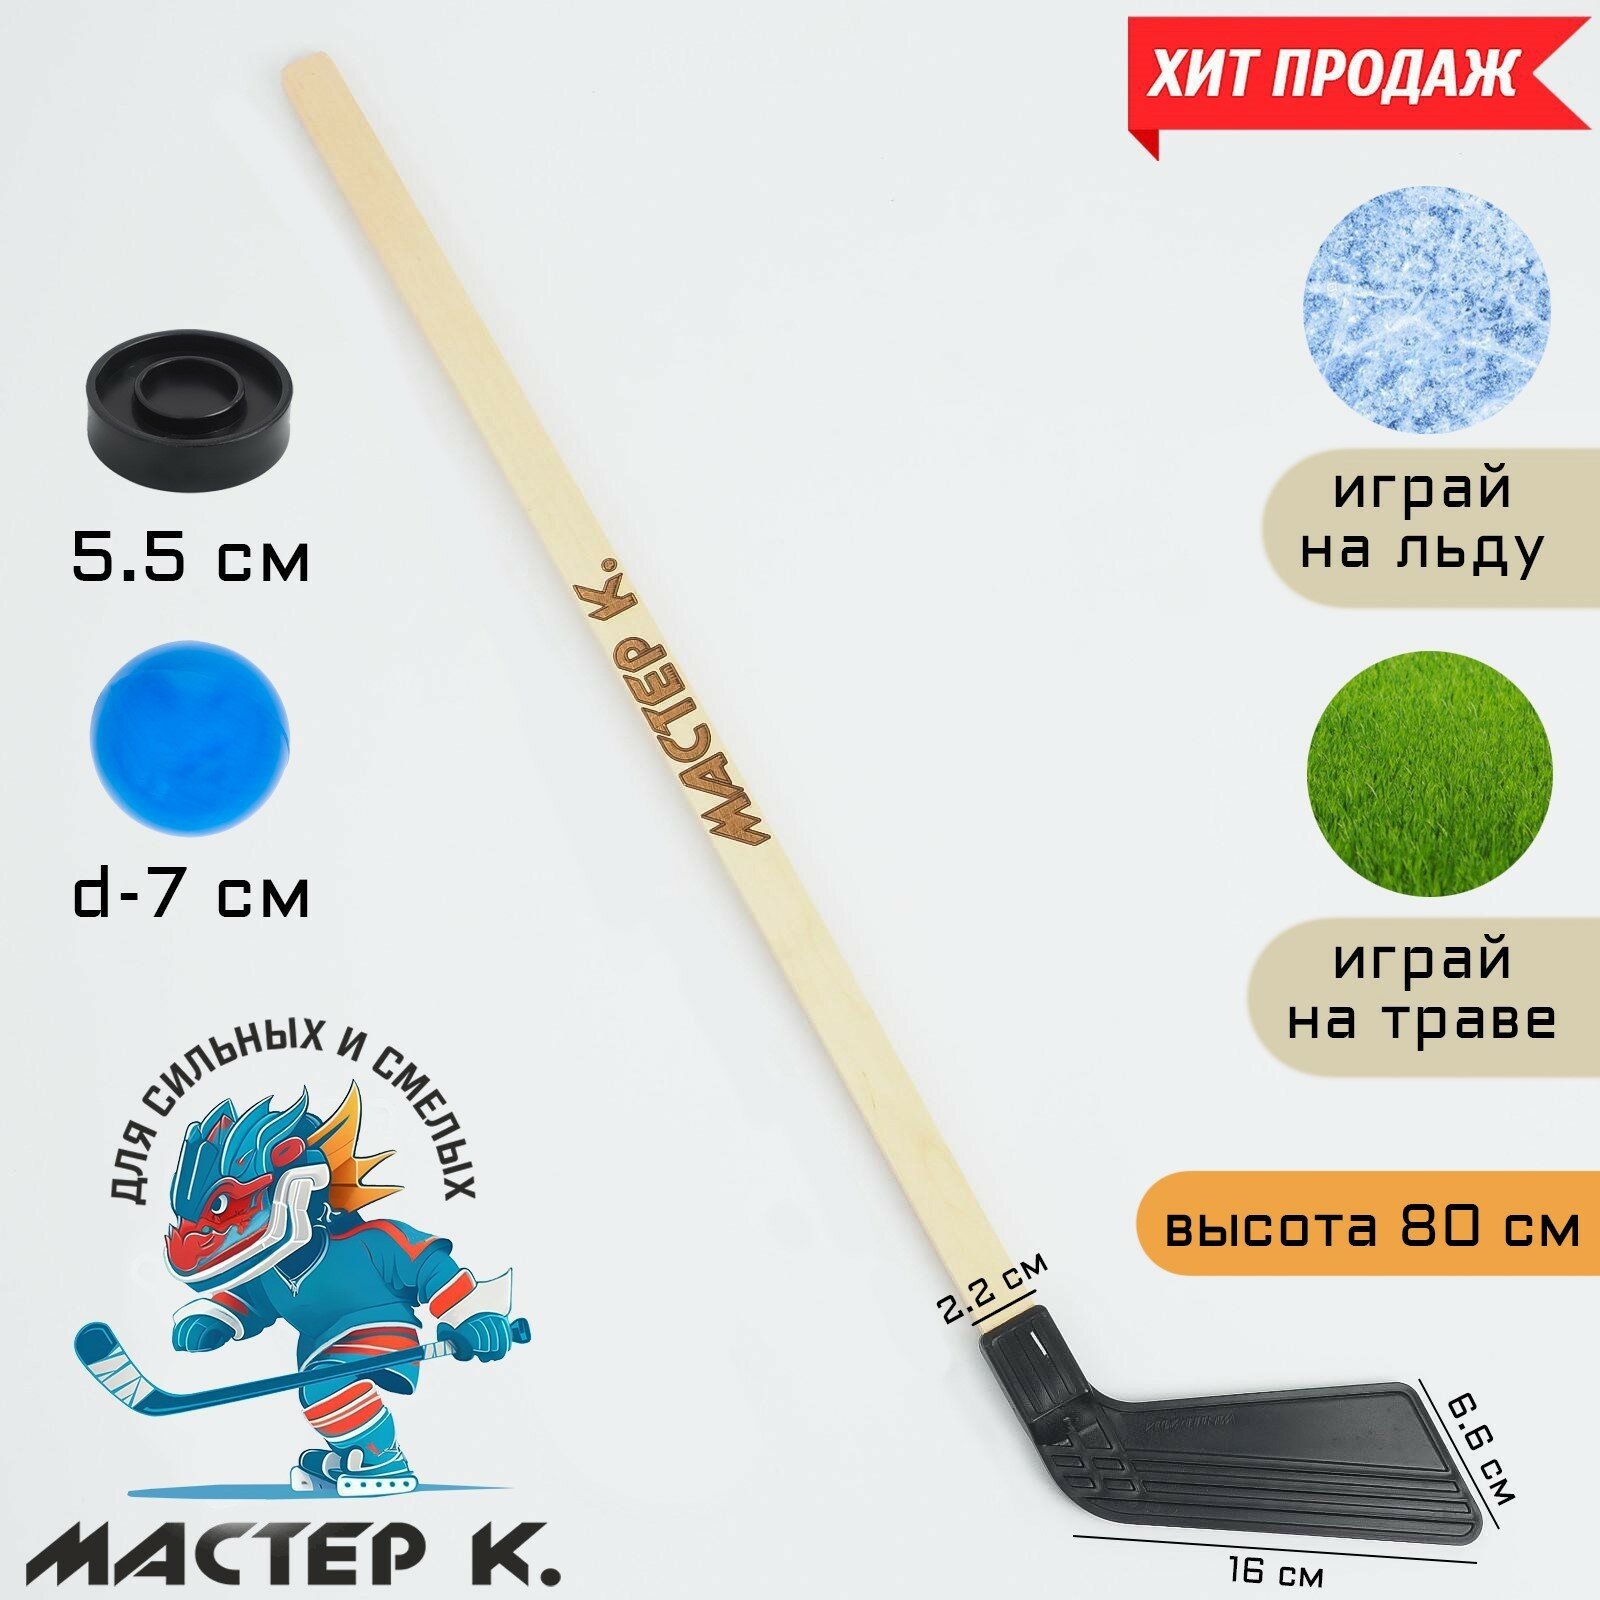 Клюшка для игры в хоккей, набор: клюшка 80 см, шайба 5.5 х 1.5 см, мяч d-7 см